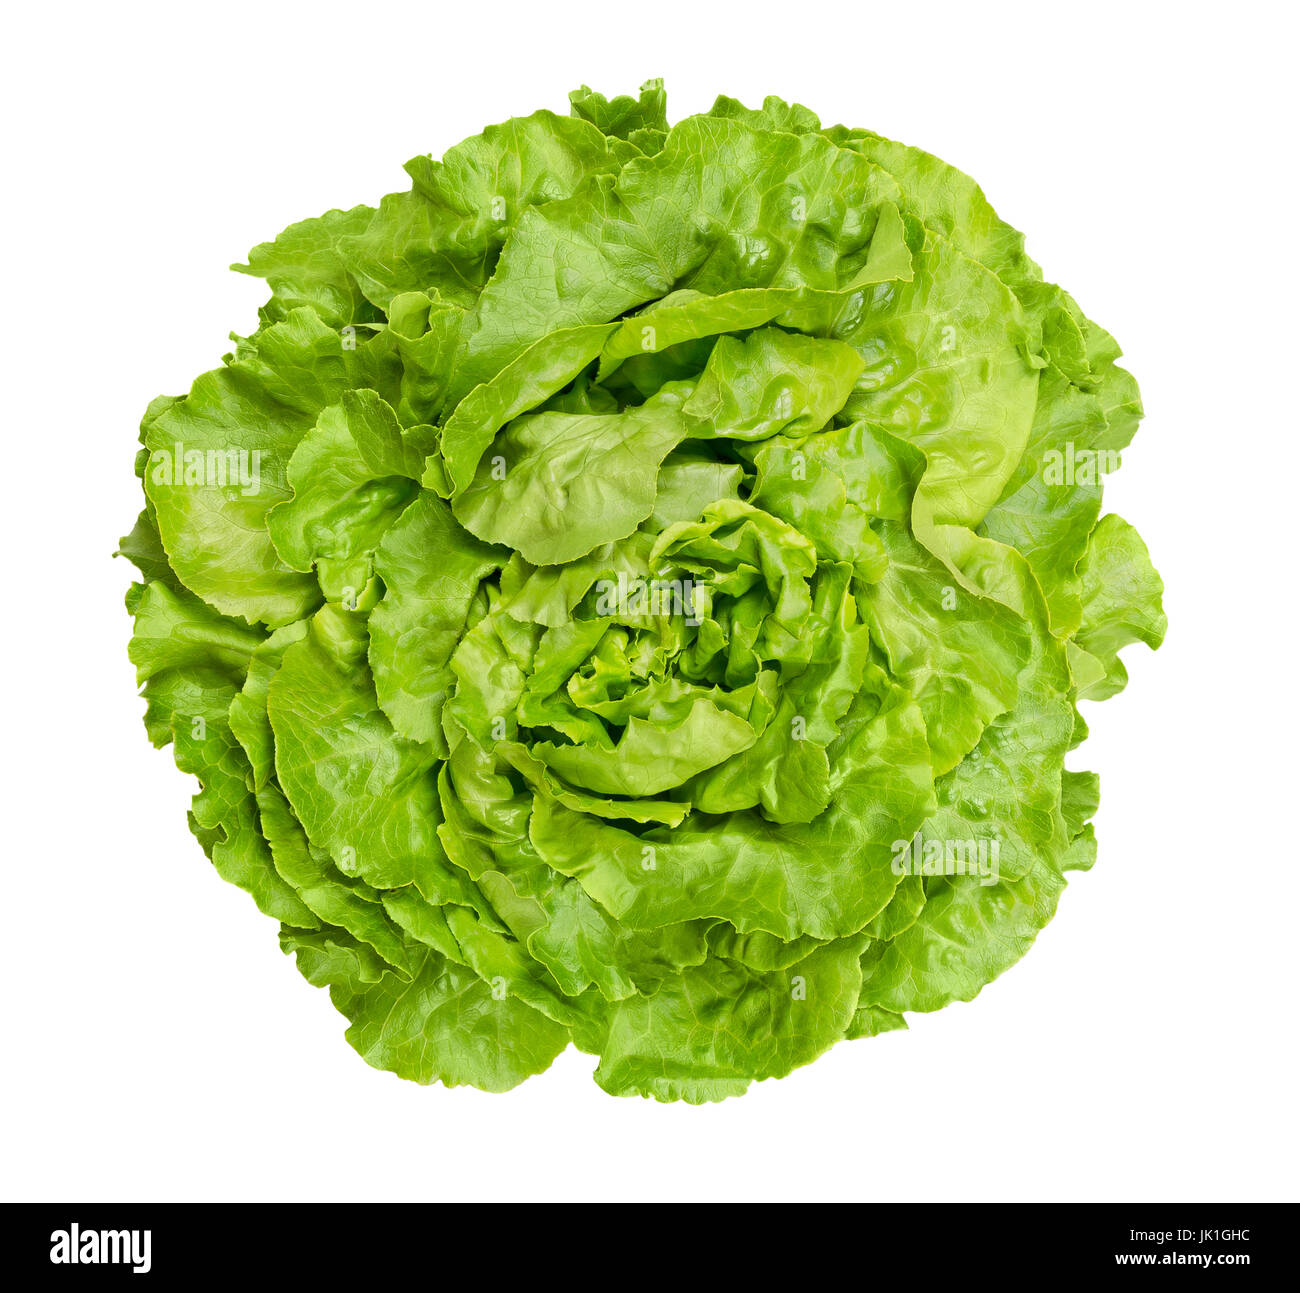 Kopfsalat-Salat von oben. Auch Boston oder Bibb Kopfsalat. Runde Salat. Ein grüner Kopf Salat mit losen Anordnung der Blätter. Lactuca Sativa. Stockfoto